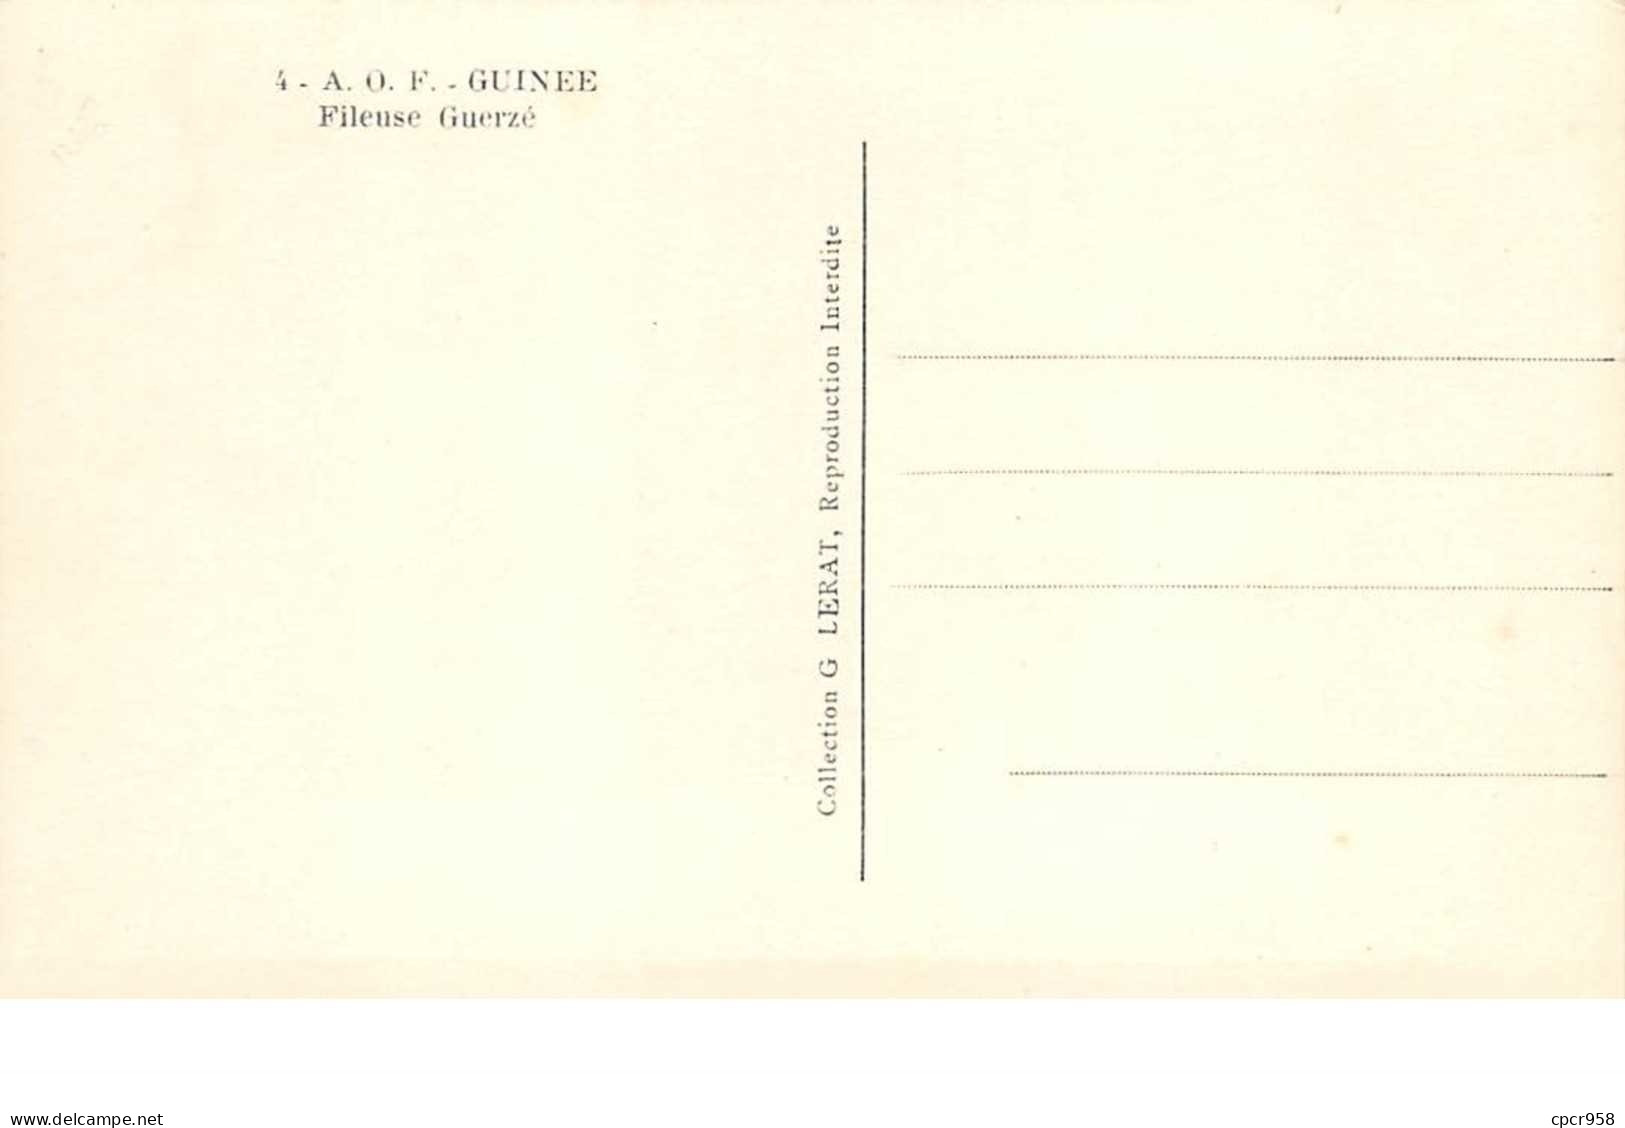 Guinée . A O F . N°52109 . Ethnique . Scarifications . Collection G.LERAT . N°04 . Fieuse Guerzé. - Französisch-Guinea